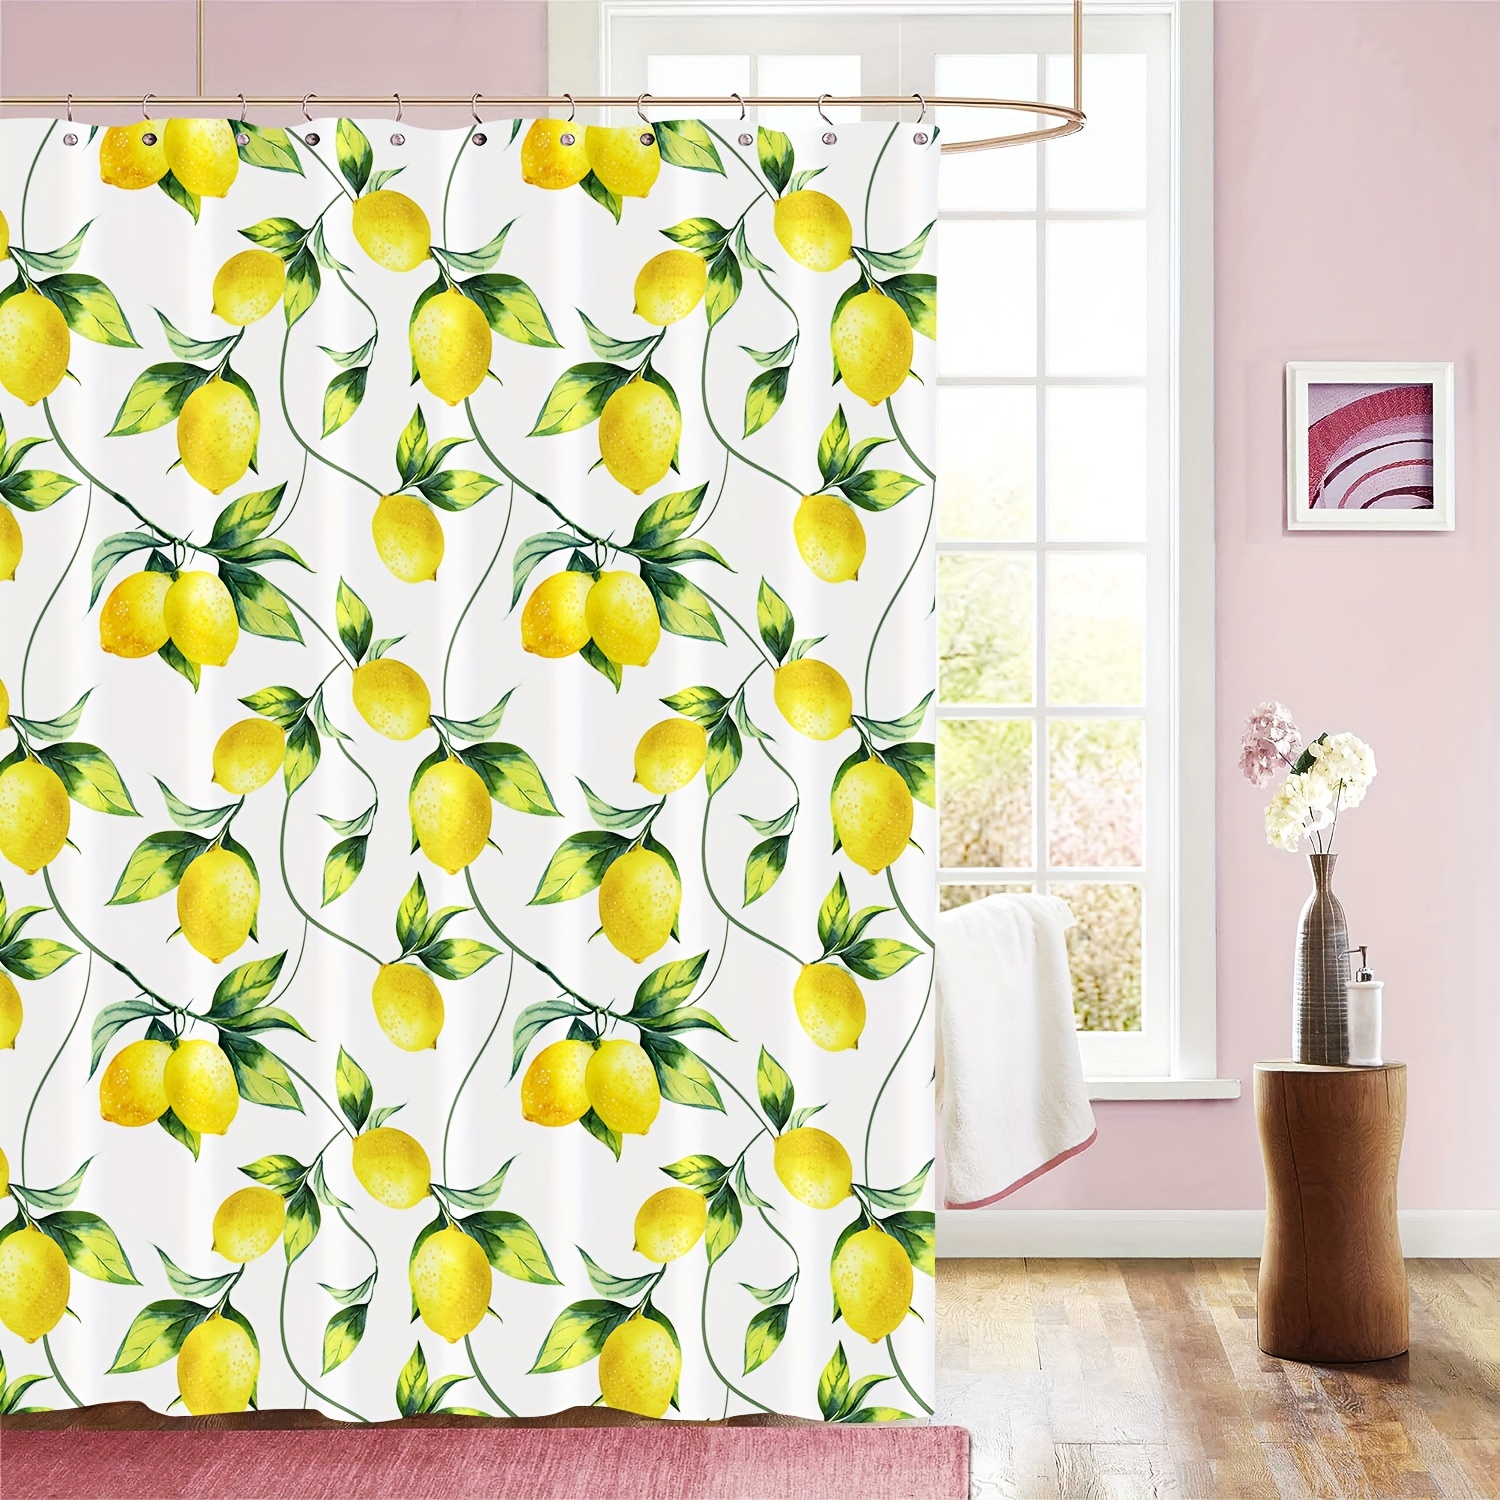 Rideau de douche Polyester Tissu Lavable en machine avec 12